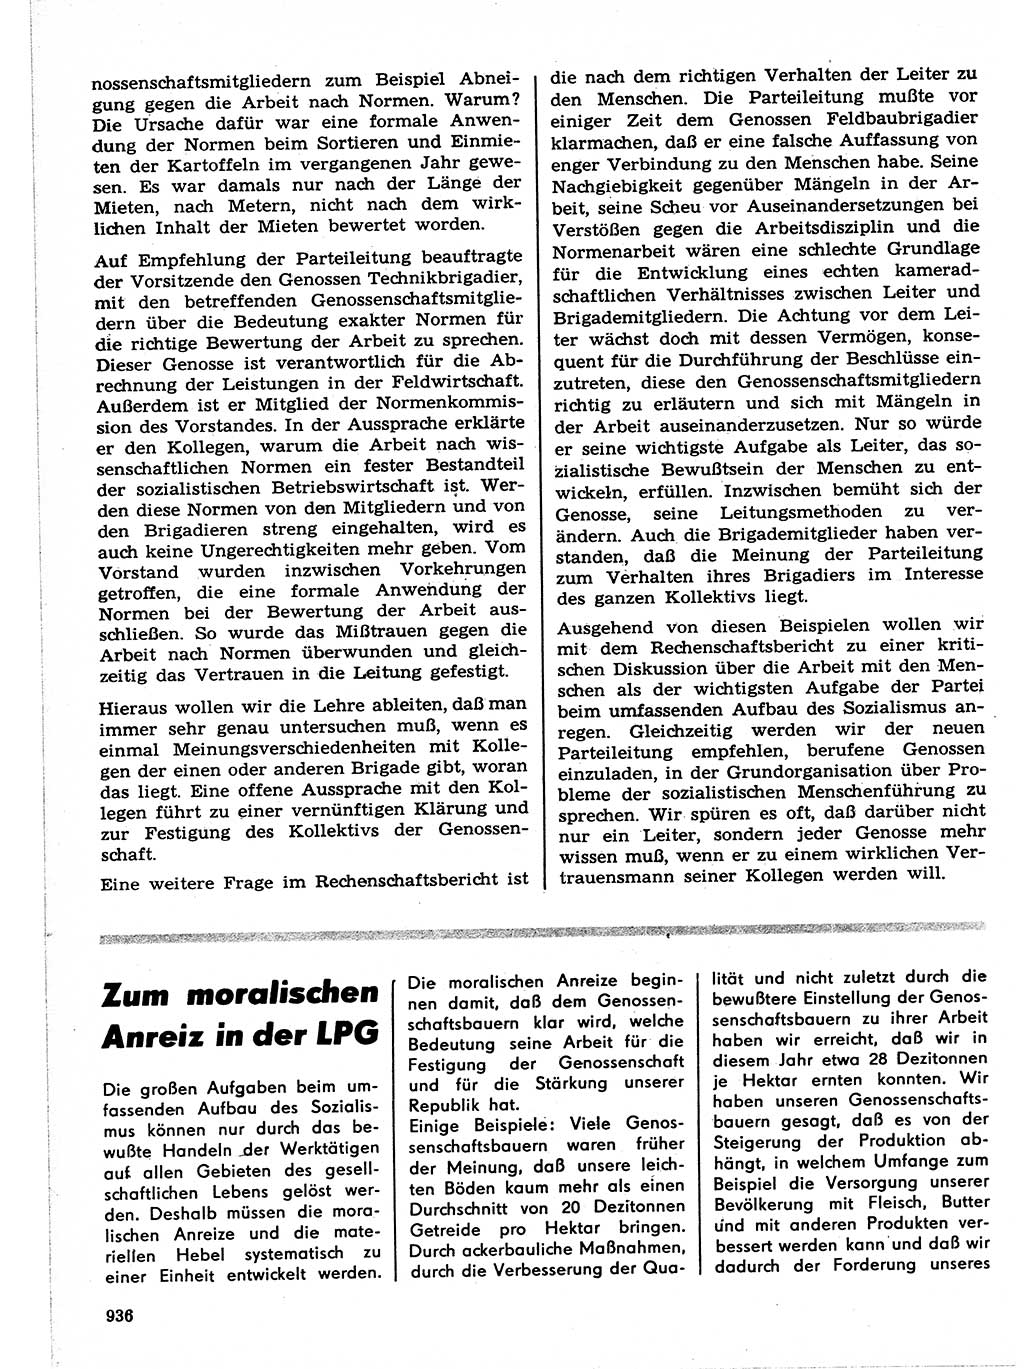 Neuer Weg (NW), Organ des Zentralkomitees (ZK) der SED (Sozialistische Einheitspartei Deutschlands) für Fragen des Parteilebens, 21. Jahrgang [Deutsche Demokratische Republik (DDR)] 1966, Seite 936 (NW ZK SED DDR 1966, S. 936)